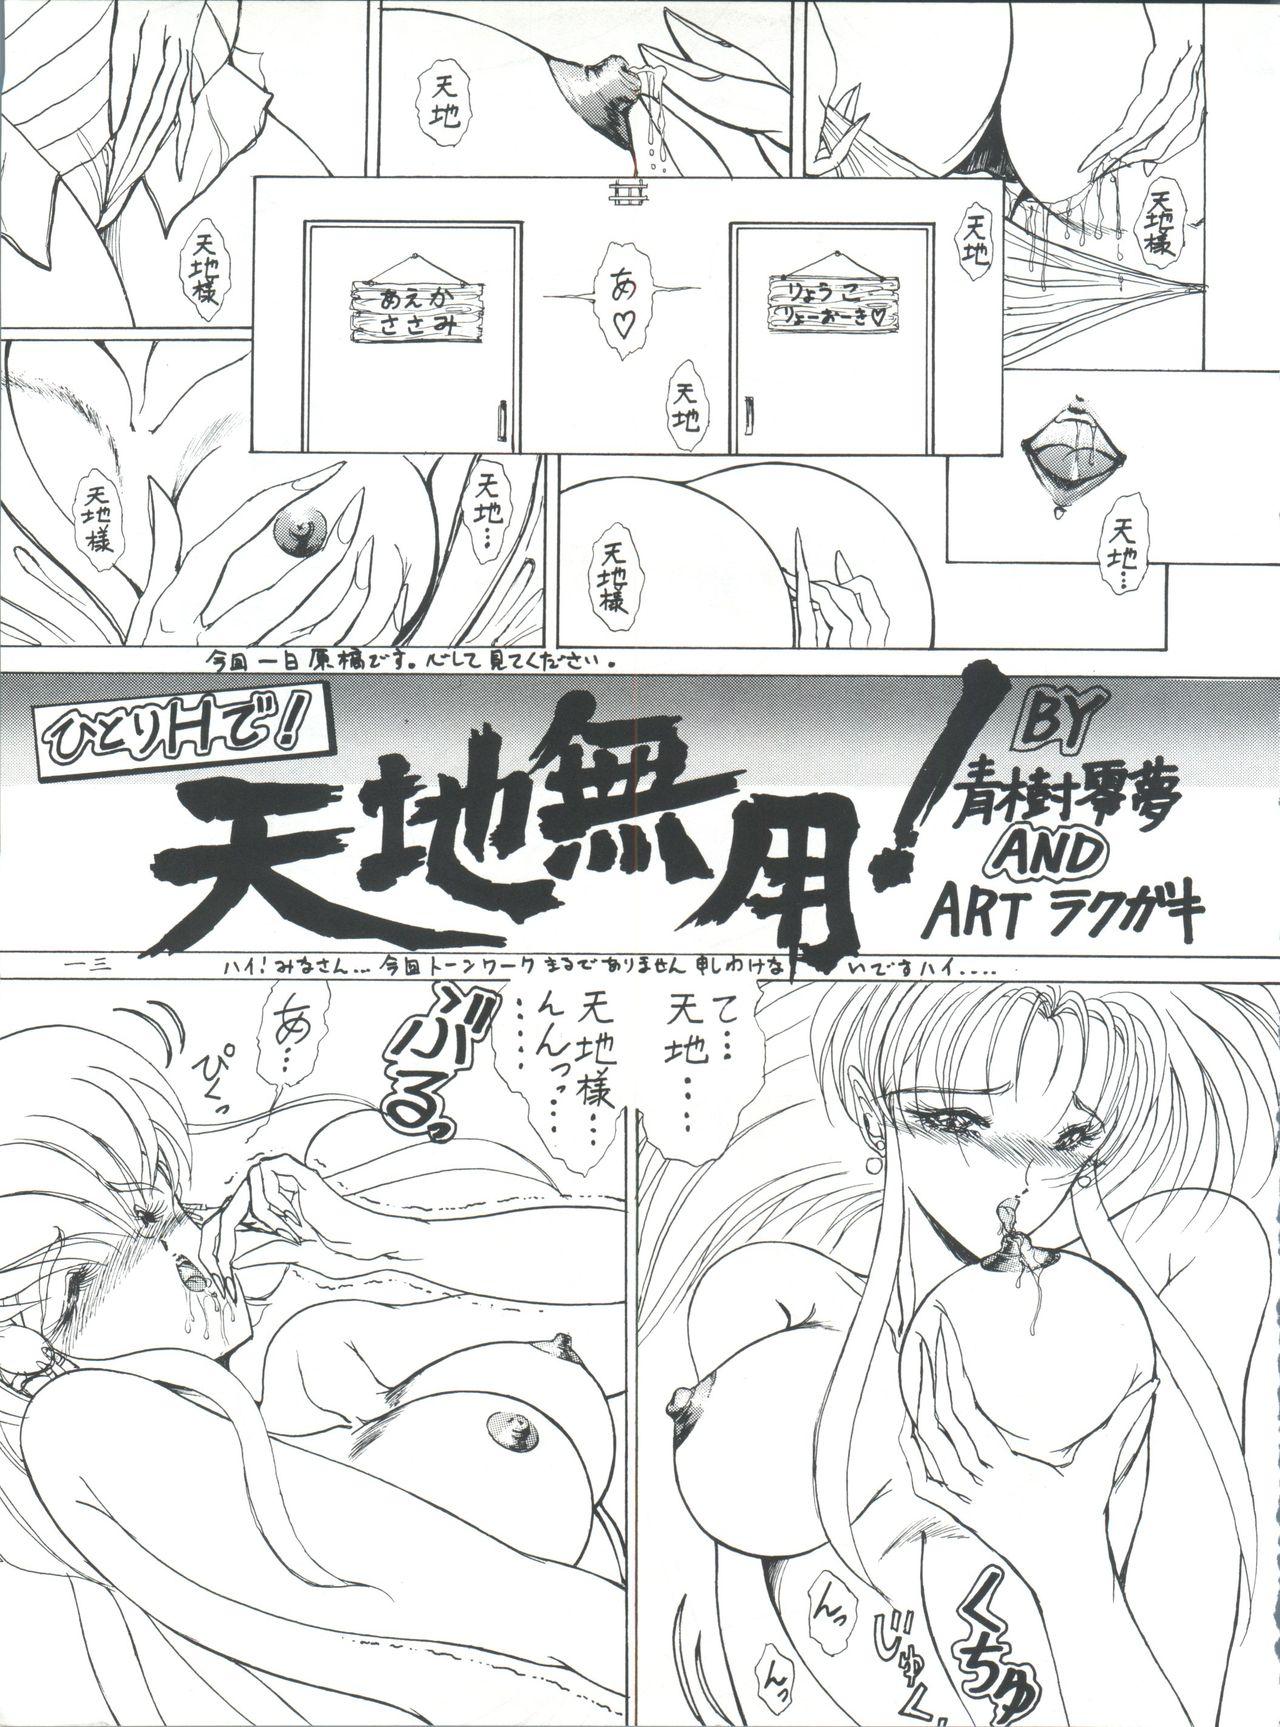 Flash Plus-Y Vol. 11 Konpeki no Tsukiyo - Tenchi muyo Calcinha - Page 13